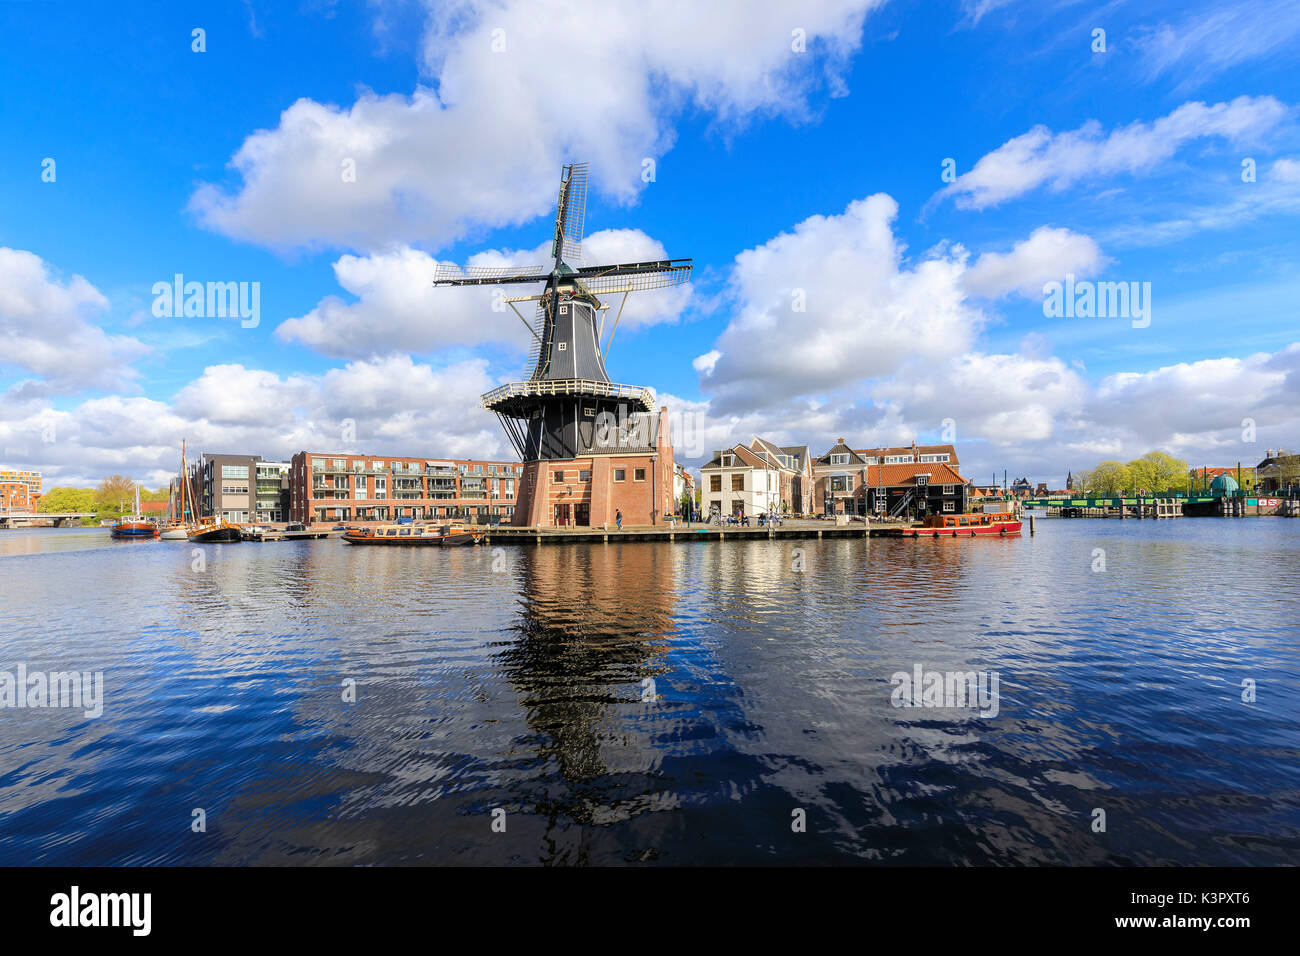 Vue de Moulin De Adriaan reflétée dans le canal de la rivière Spaarne Haarlem aux Pays-Bas Hollande du Nord Europe Banque D'Images